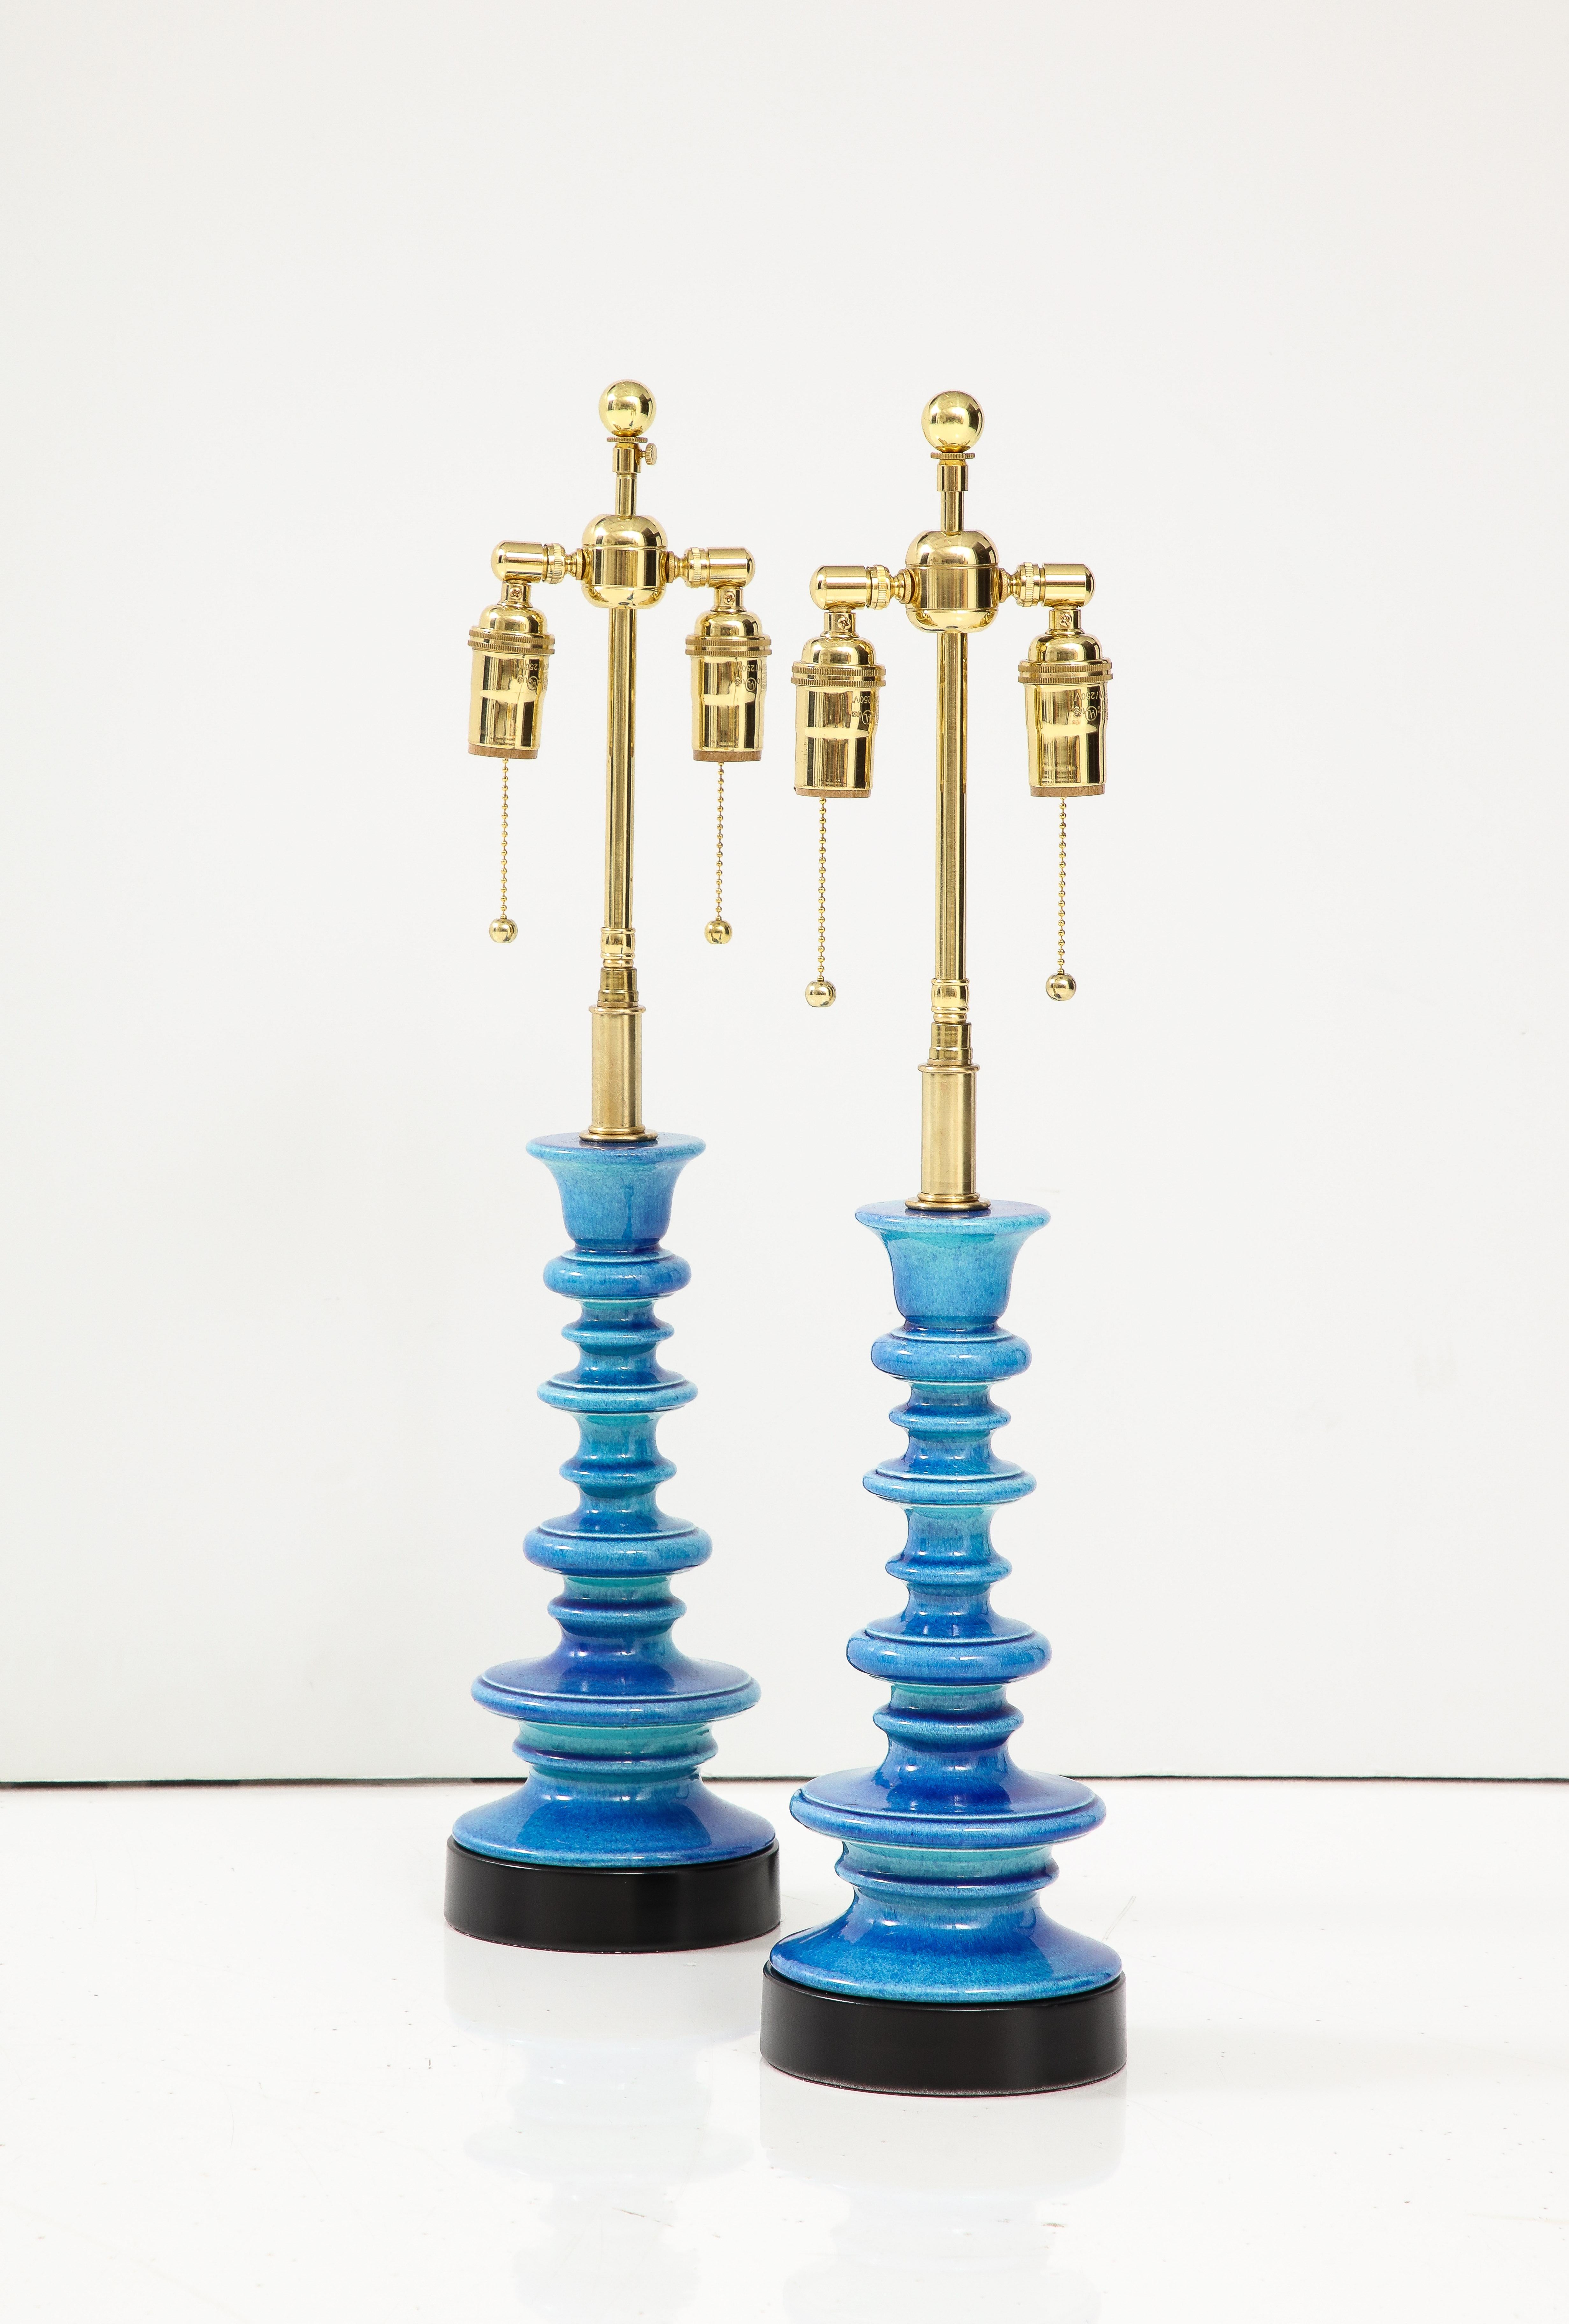 Ein Paar pagodenförmige Keramiklampen in einer atemberaubenden ceruleanblauen Glasur.
Die Lampen wurden neu verkabelt mit einstellbaren polierten Messing-Doppelclustern, die Glühbirnen in Standardgröße und Seidenrayonschnüre aufnehmen.
Jede Fassung